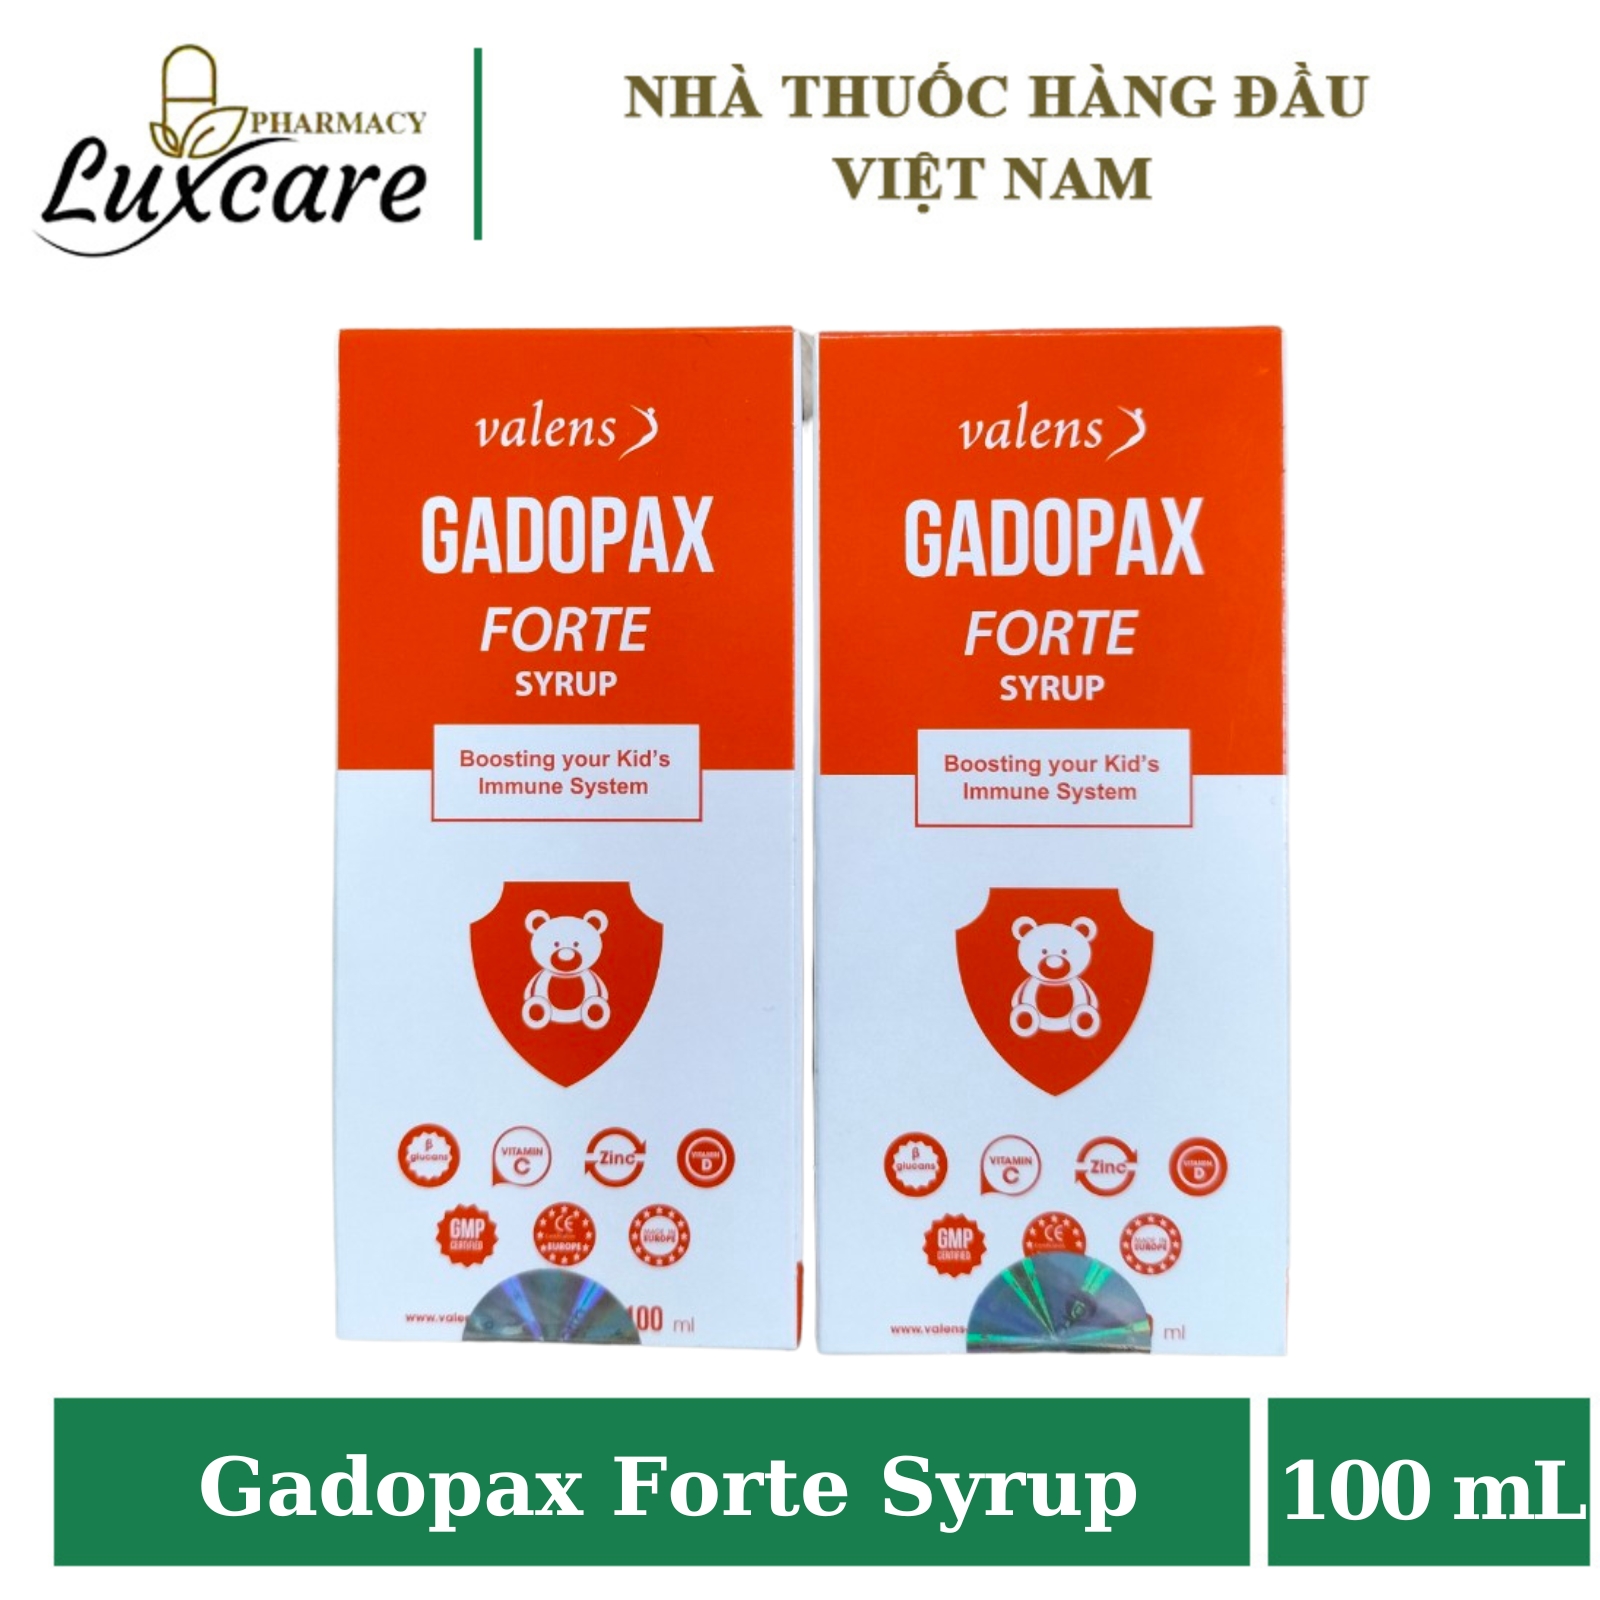 Gadopax Forte Syrup Hỗ trợ tăng sức đề kháng của cơ thể (Chai 100 ml) - Luxcare Pharmacy